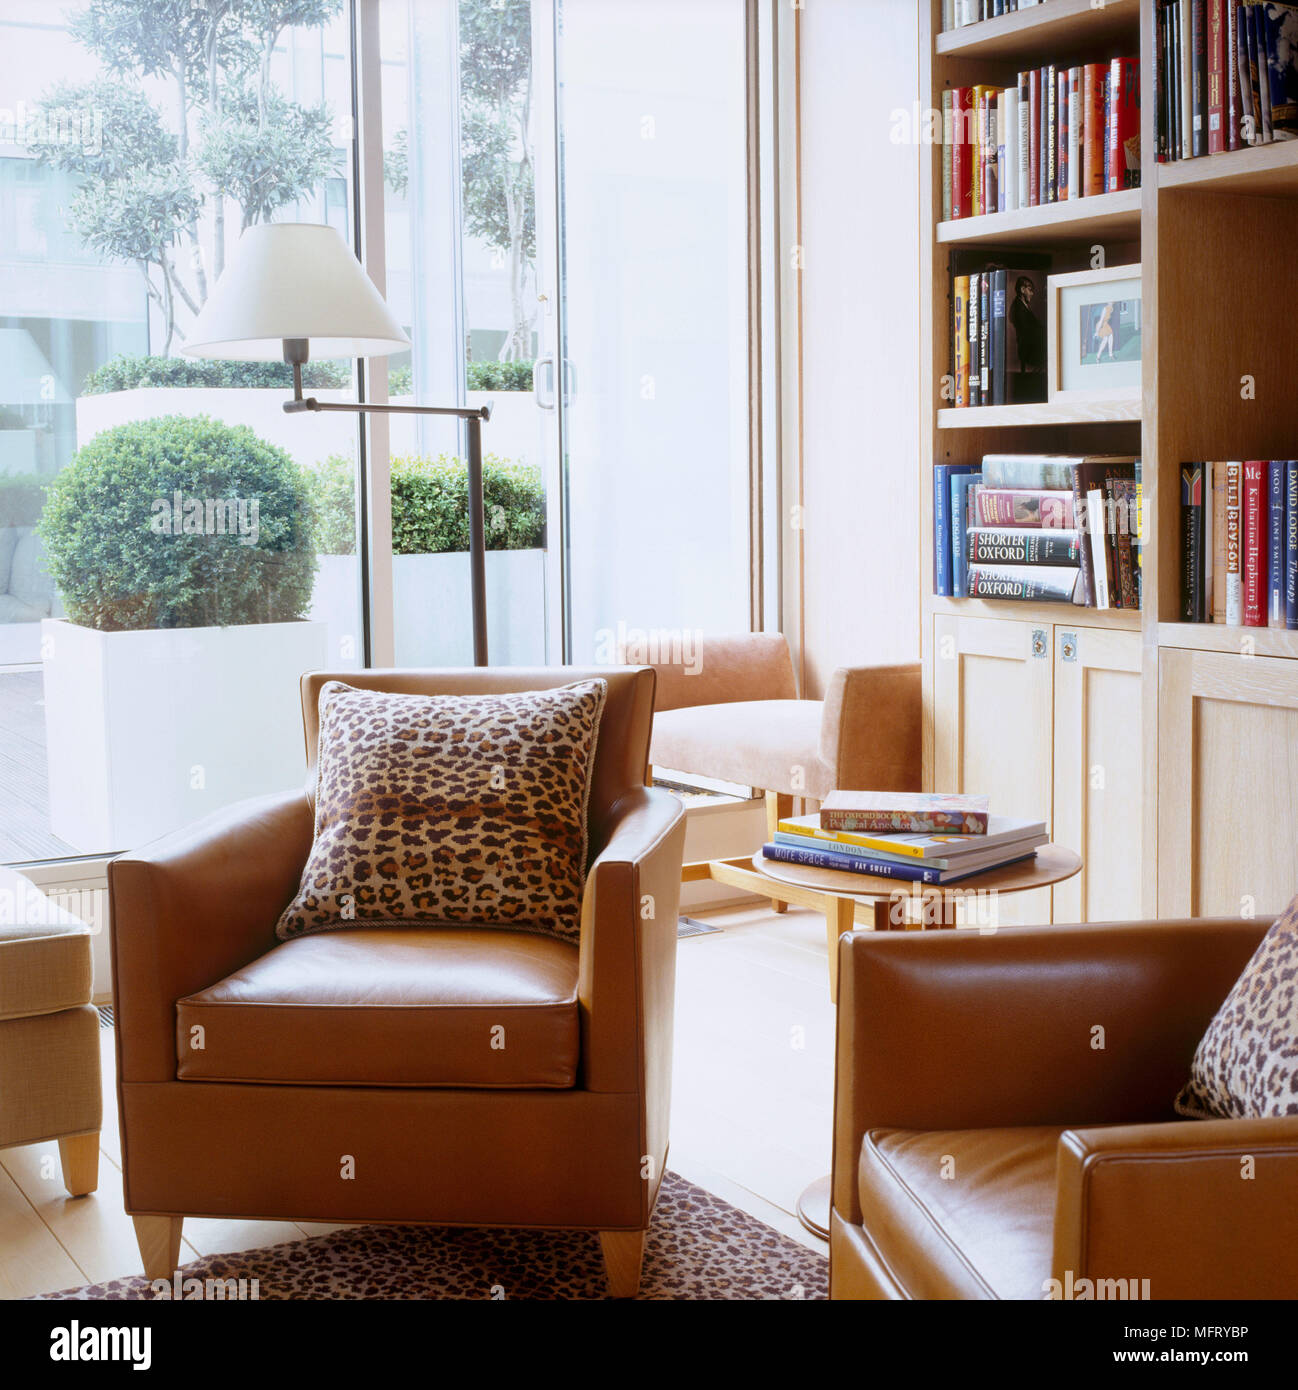 Ein modernes Wohnzimmer mit gelbbraunen Ledersesseln Bücherregal runde Seite Tabelle Stehleuchte Leopardenfell Polster drucken Stockfoto